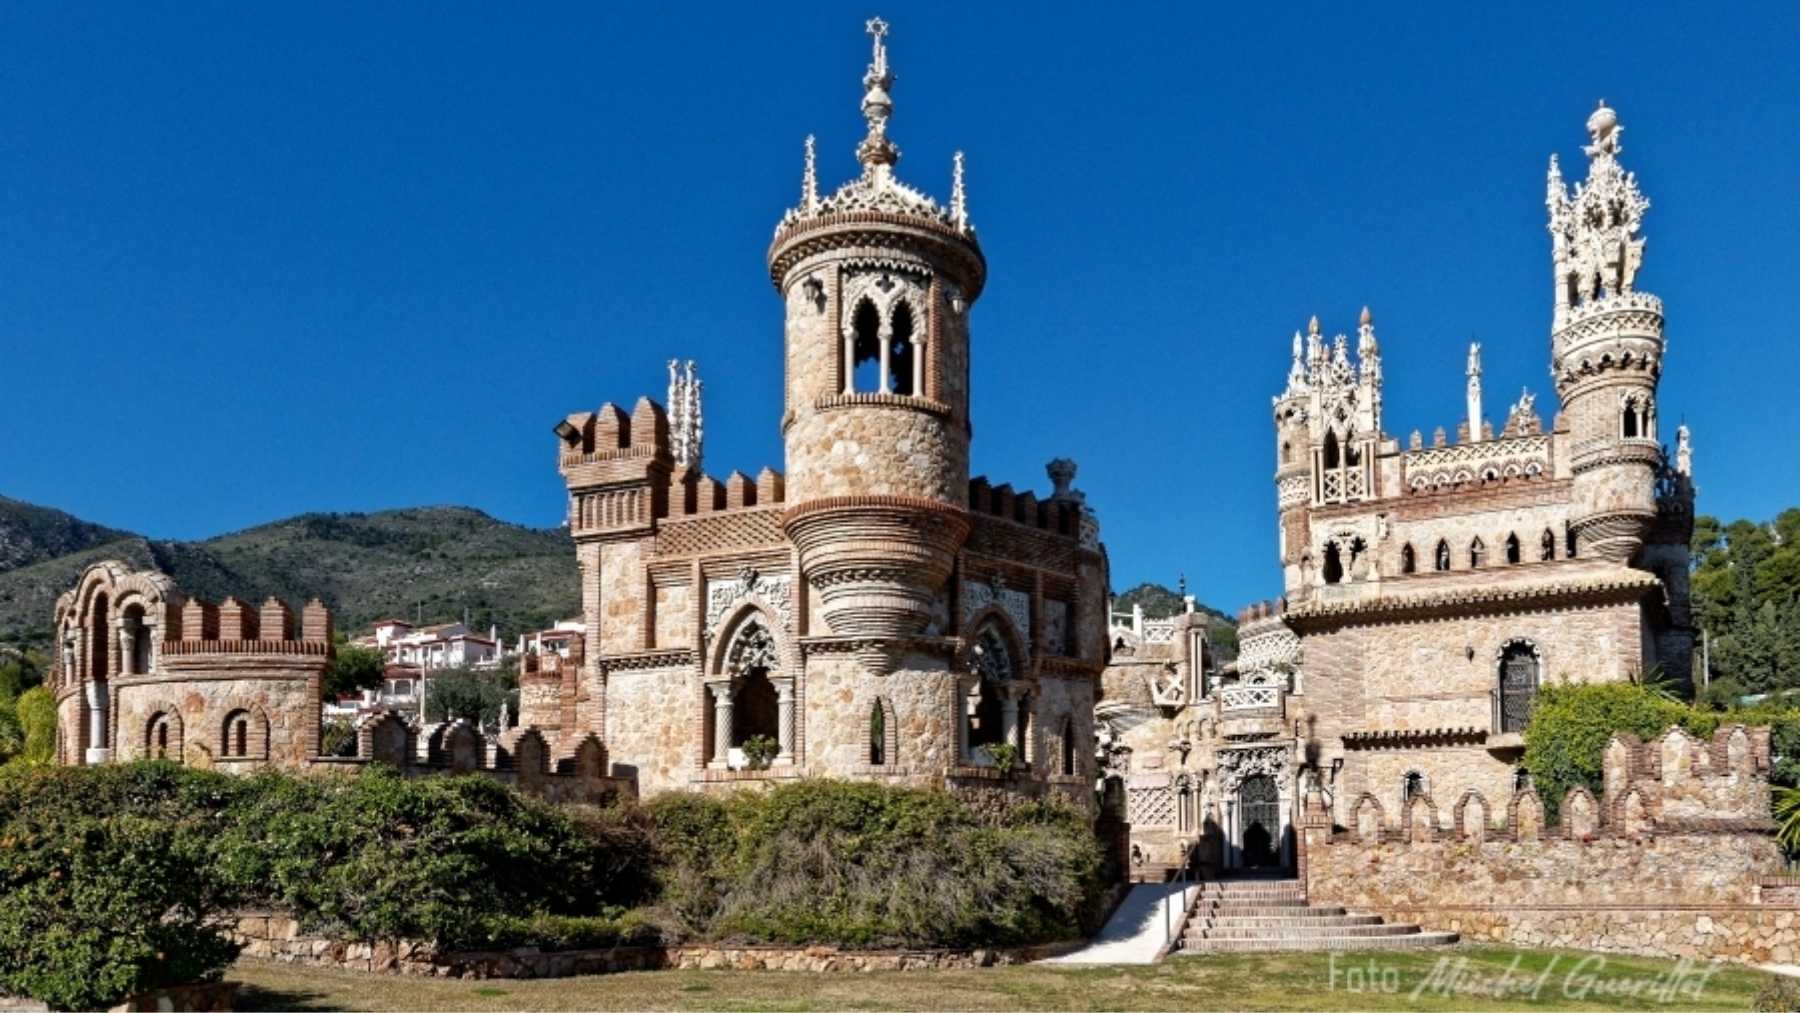 Castillo Monumento Colomares, imagen extraída de su página web